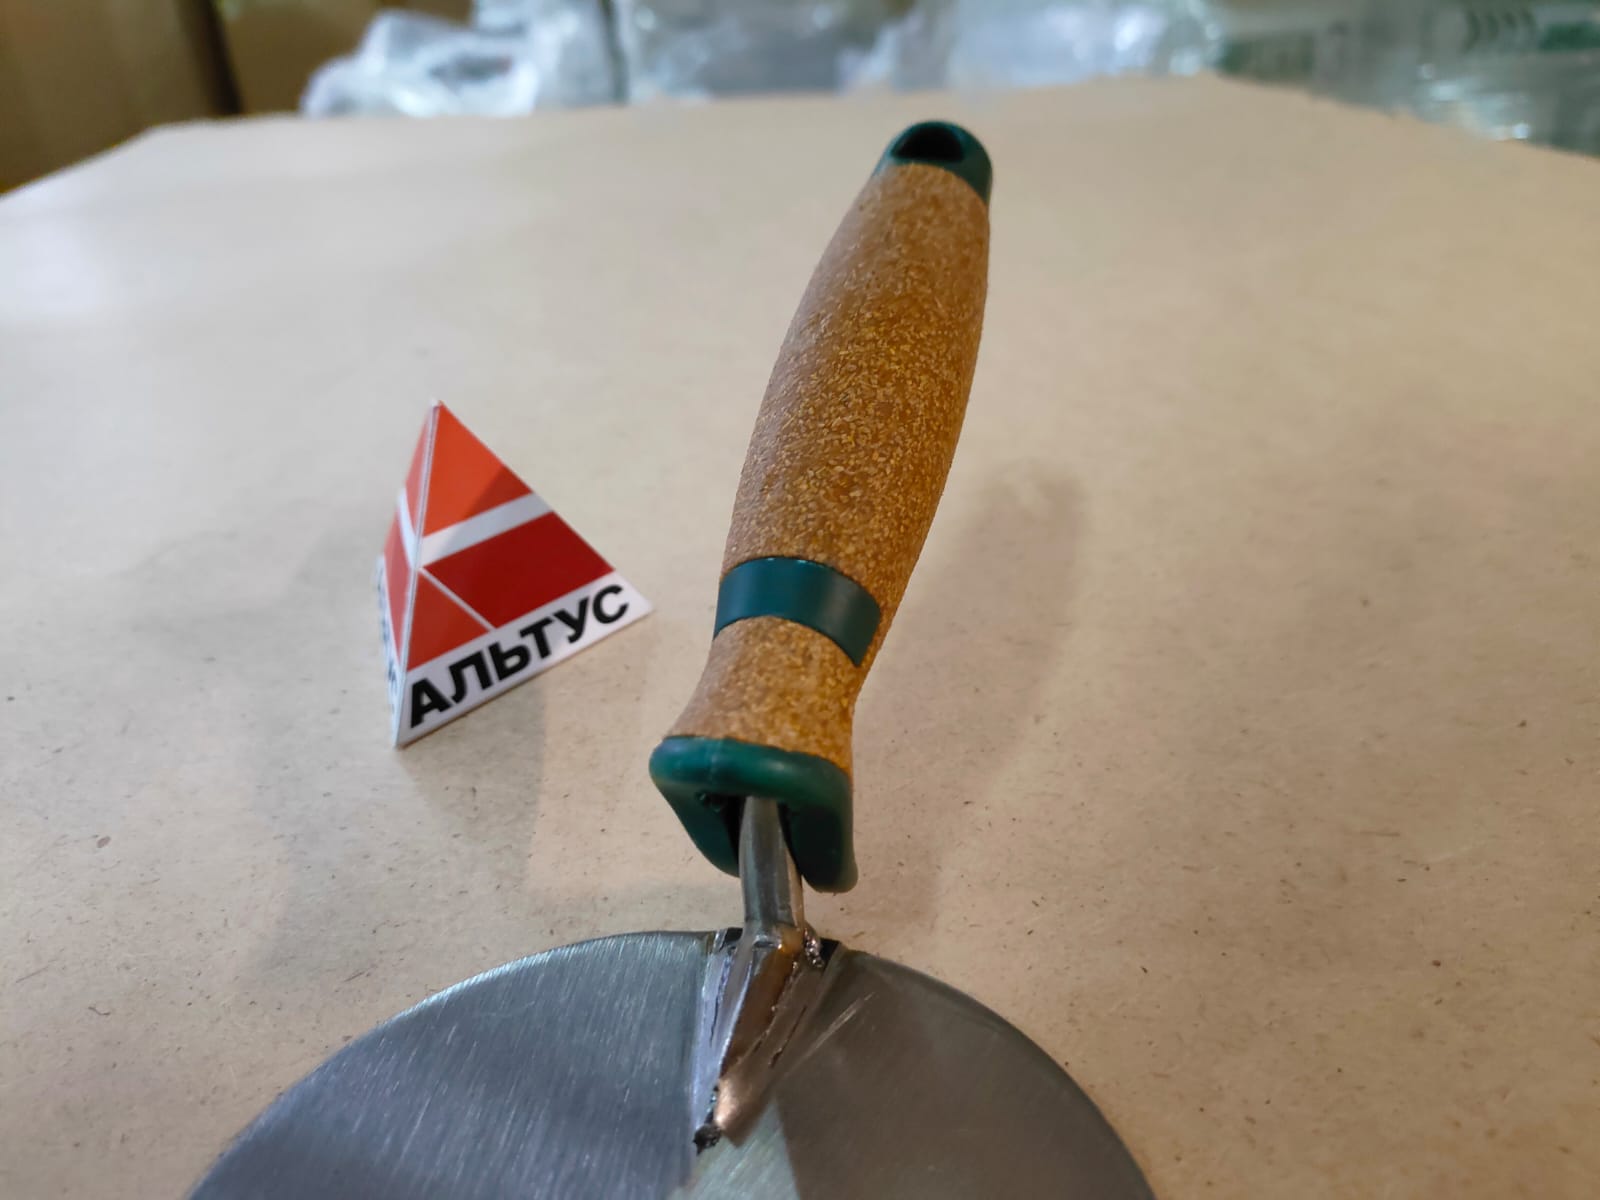 Кельма лопатка 100 мм (полотно 0,9 мм) OLEJNIK нержавеющая закаленная сталь, пробковая ручка								